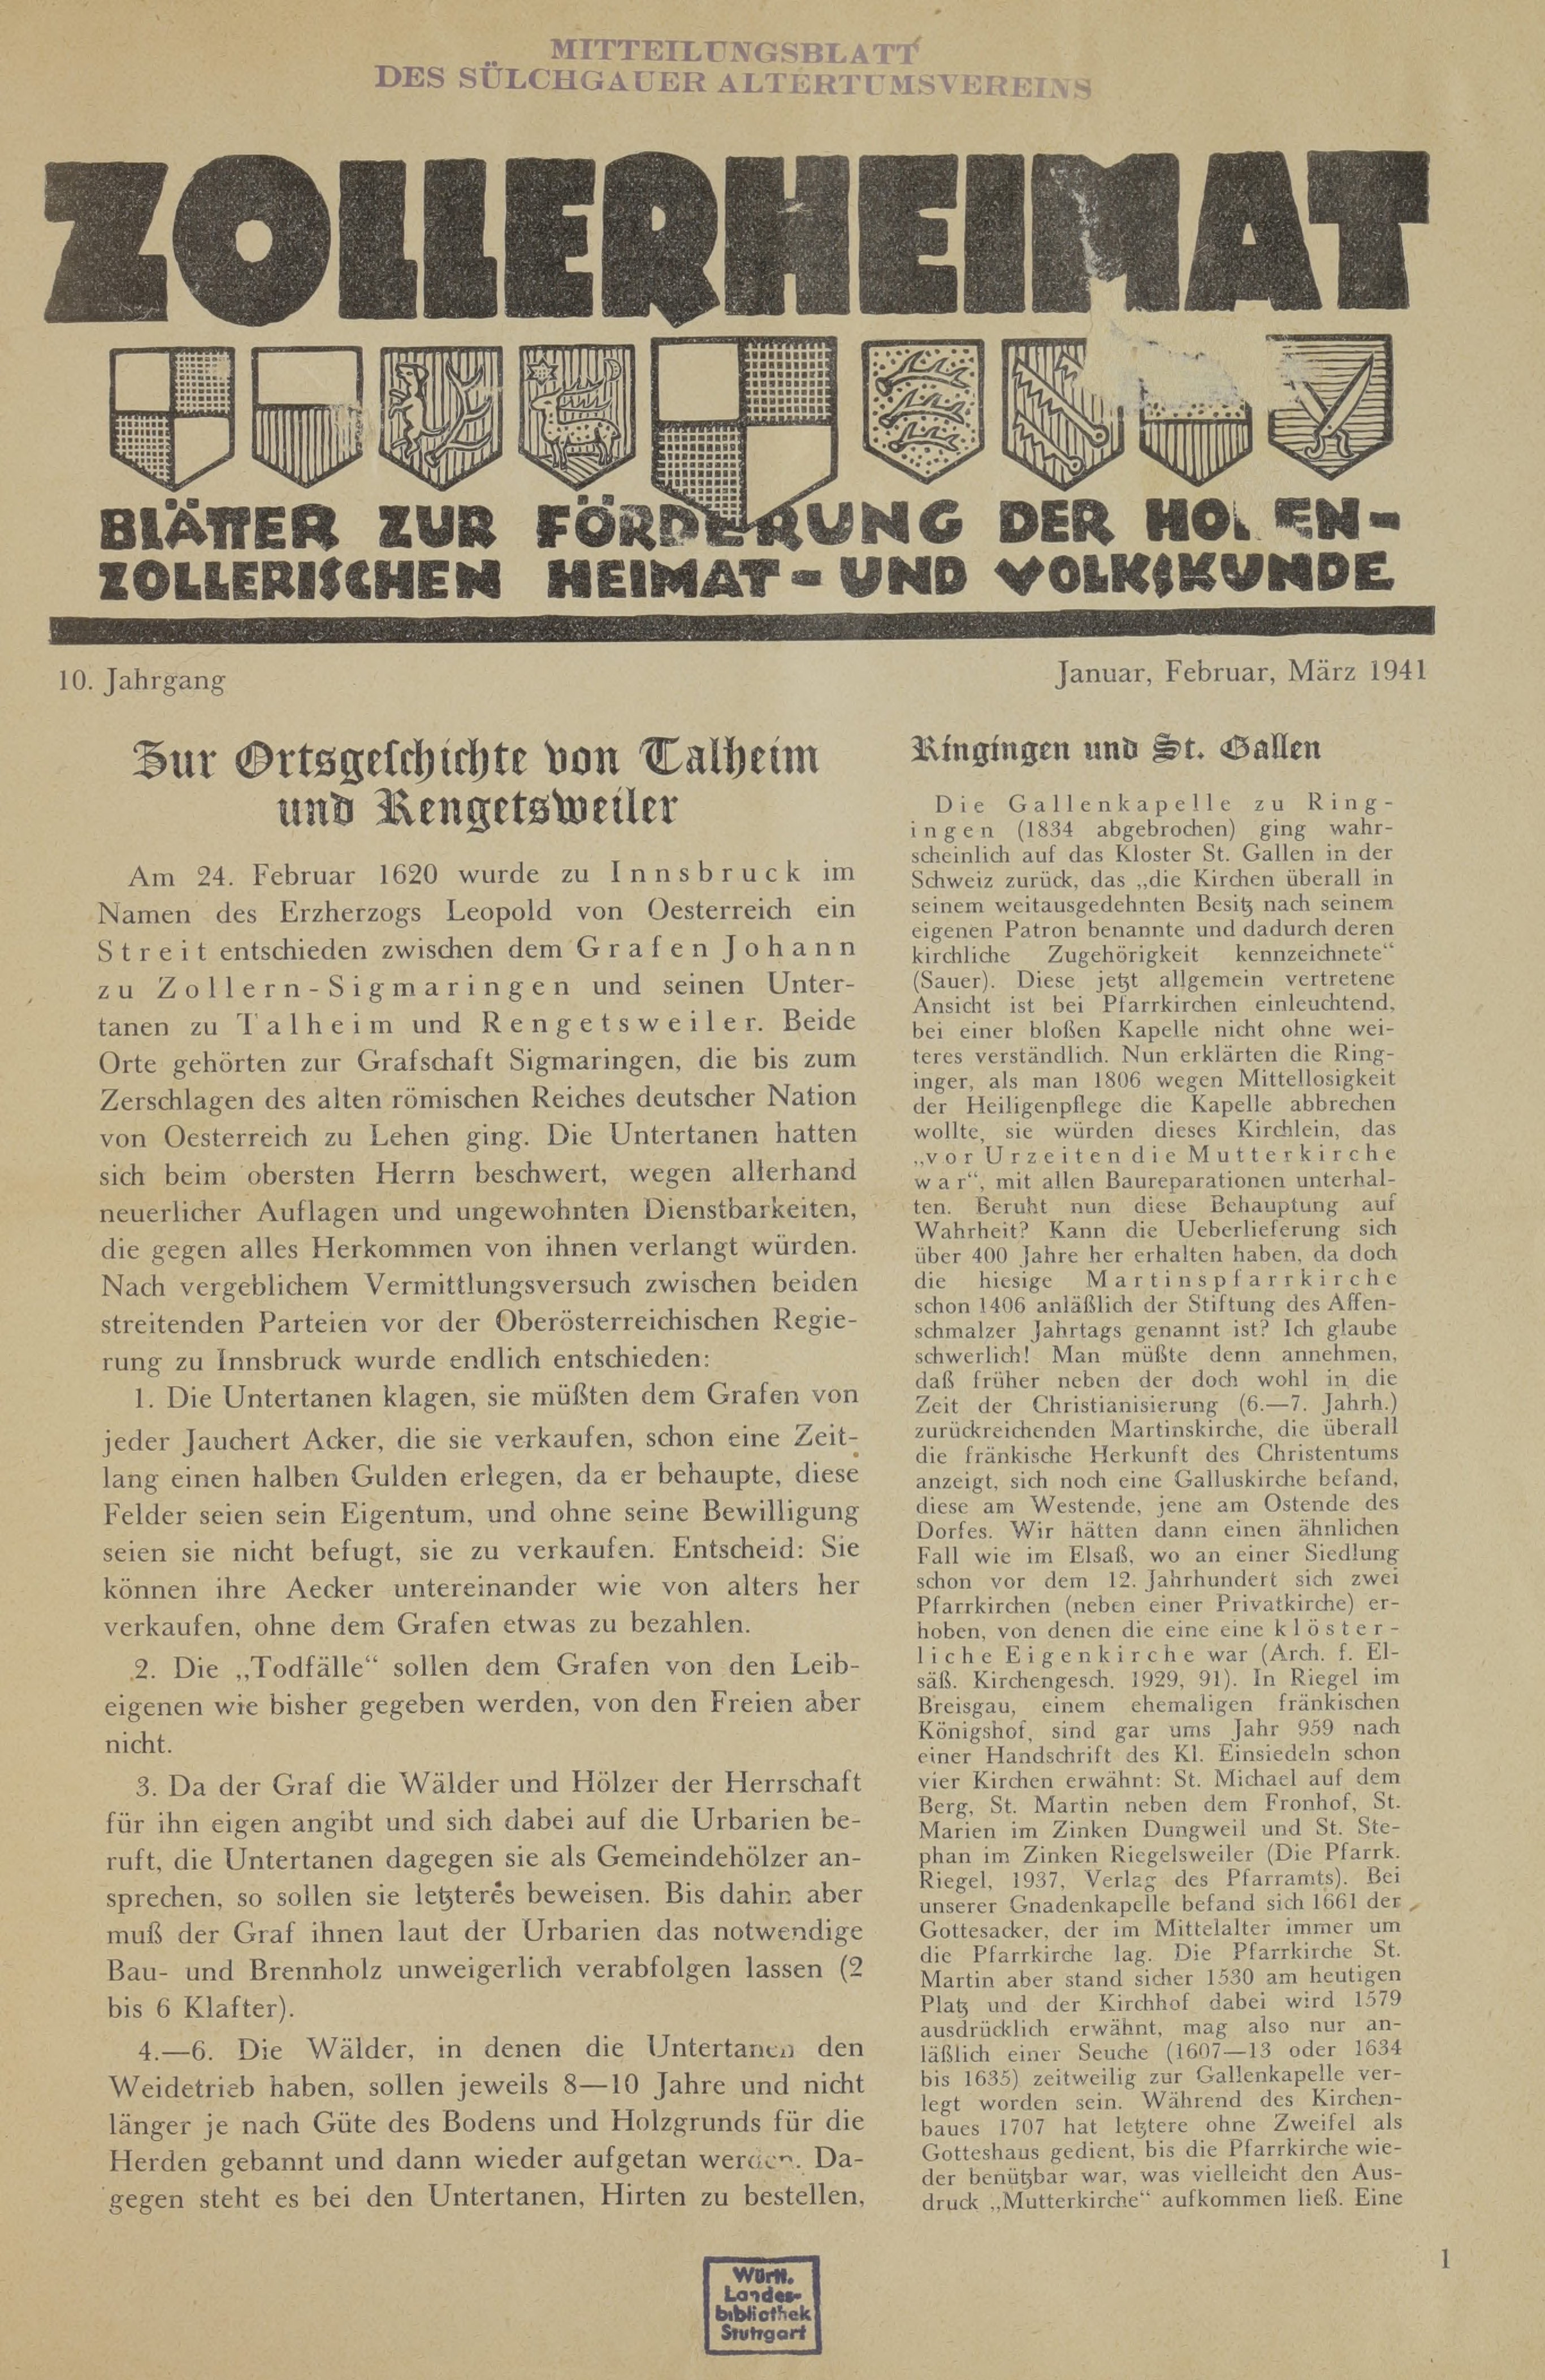                     Ansehen Bd. 10 Nr. 1 (1941): Zollerheimat
                